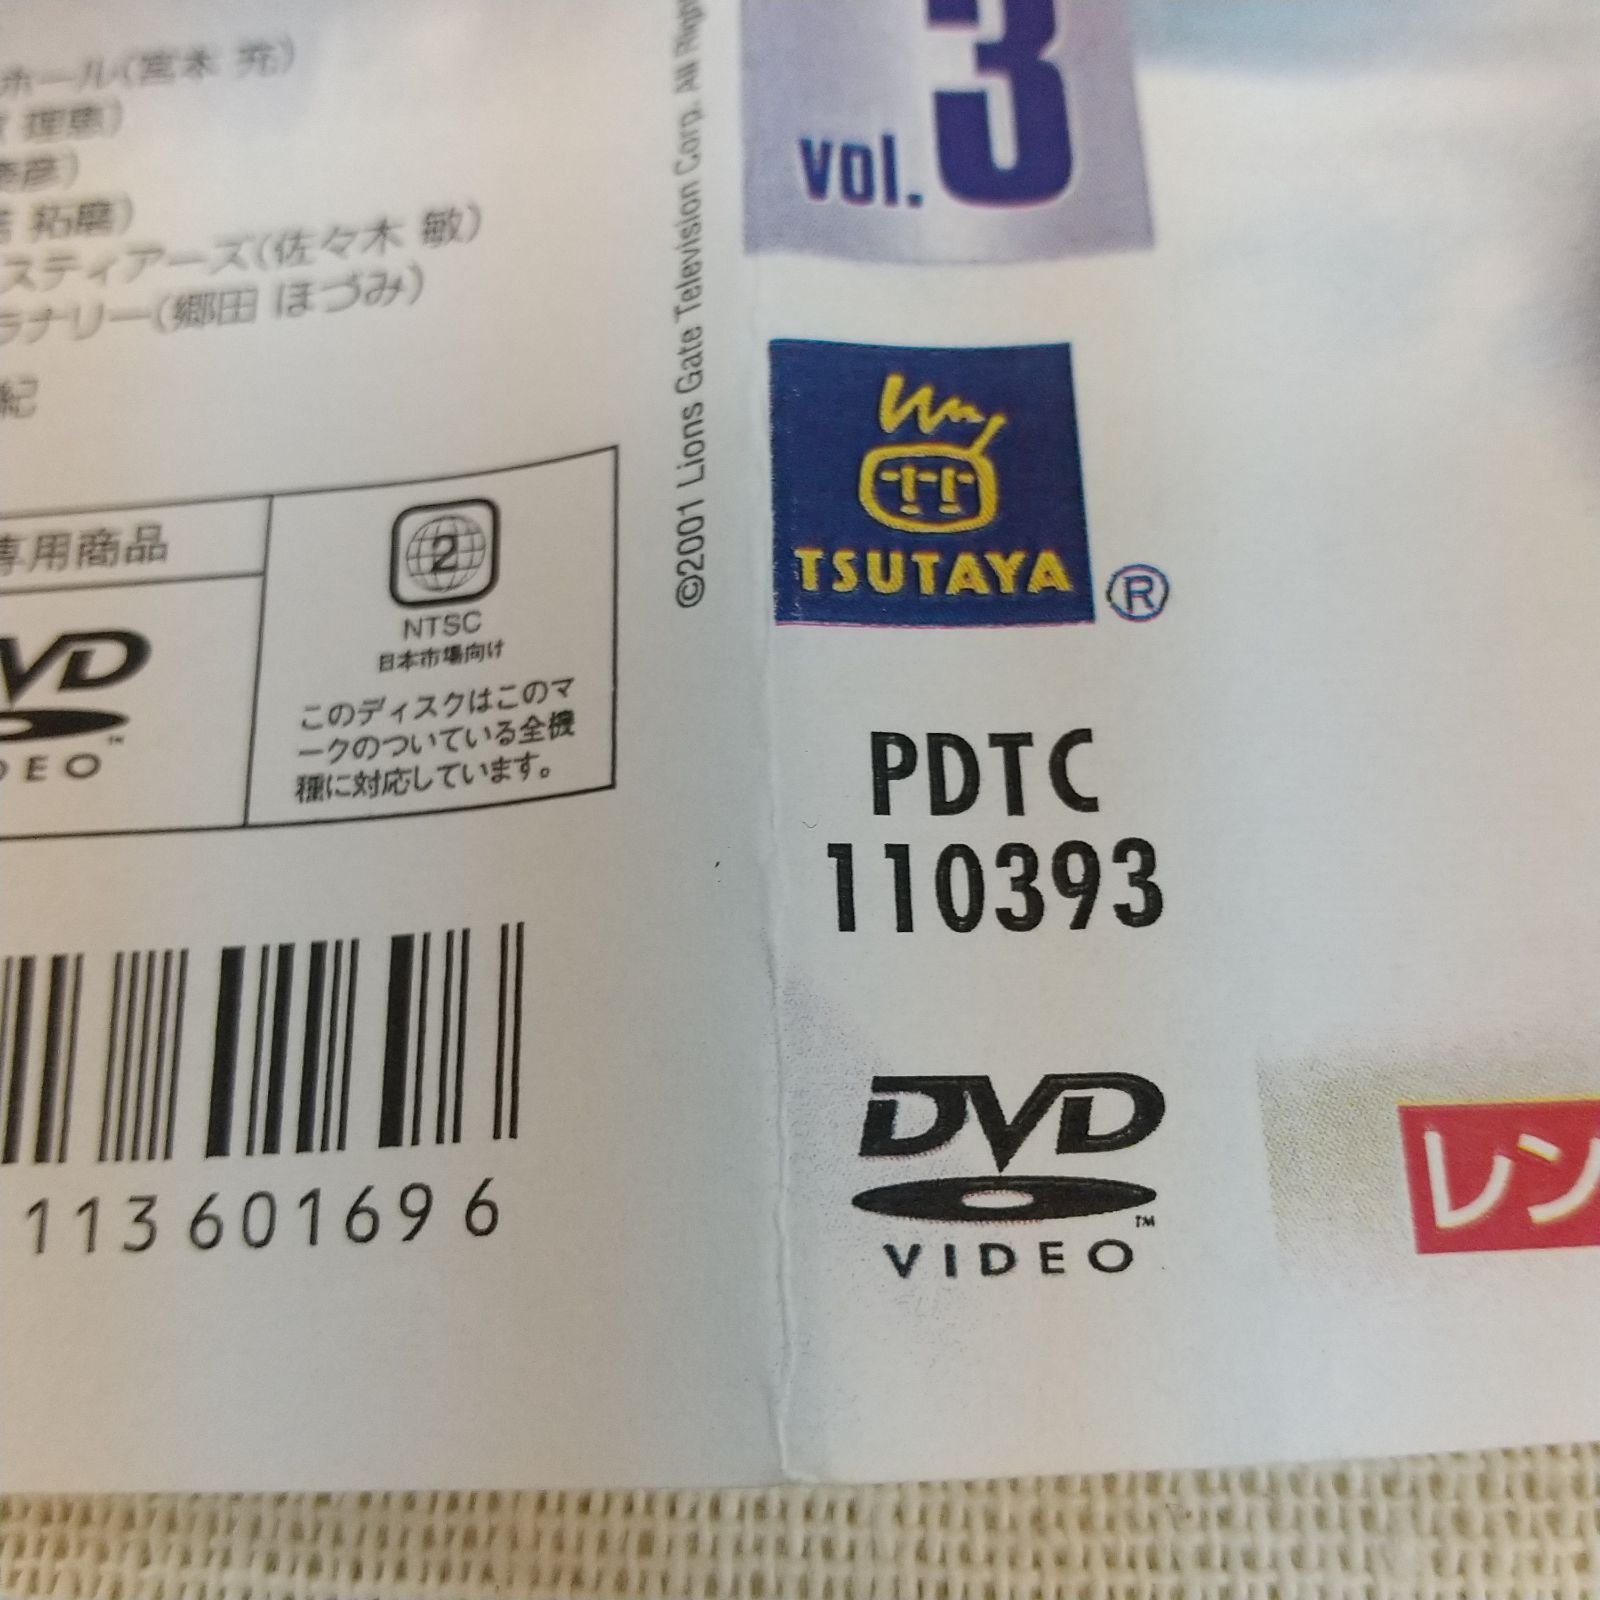 デッド・ゾーン シーズン2 Vol.3 ジャケットコピー レンタル専用 中古 DVD ケース付き - メルカリ